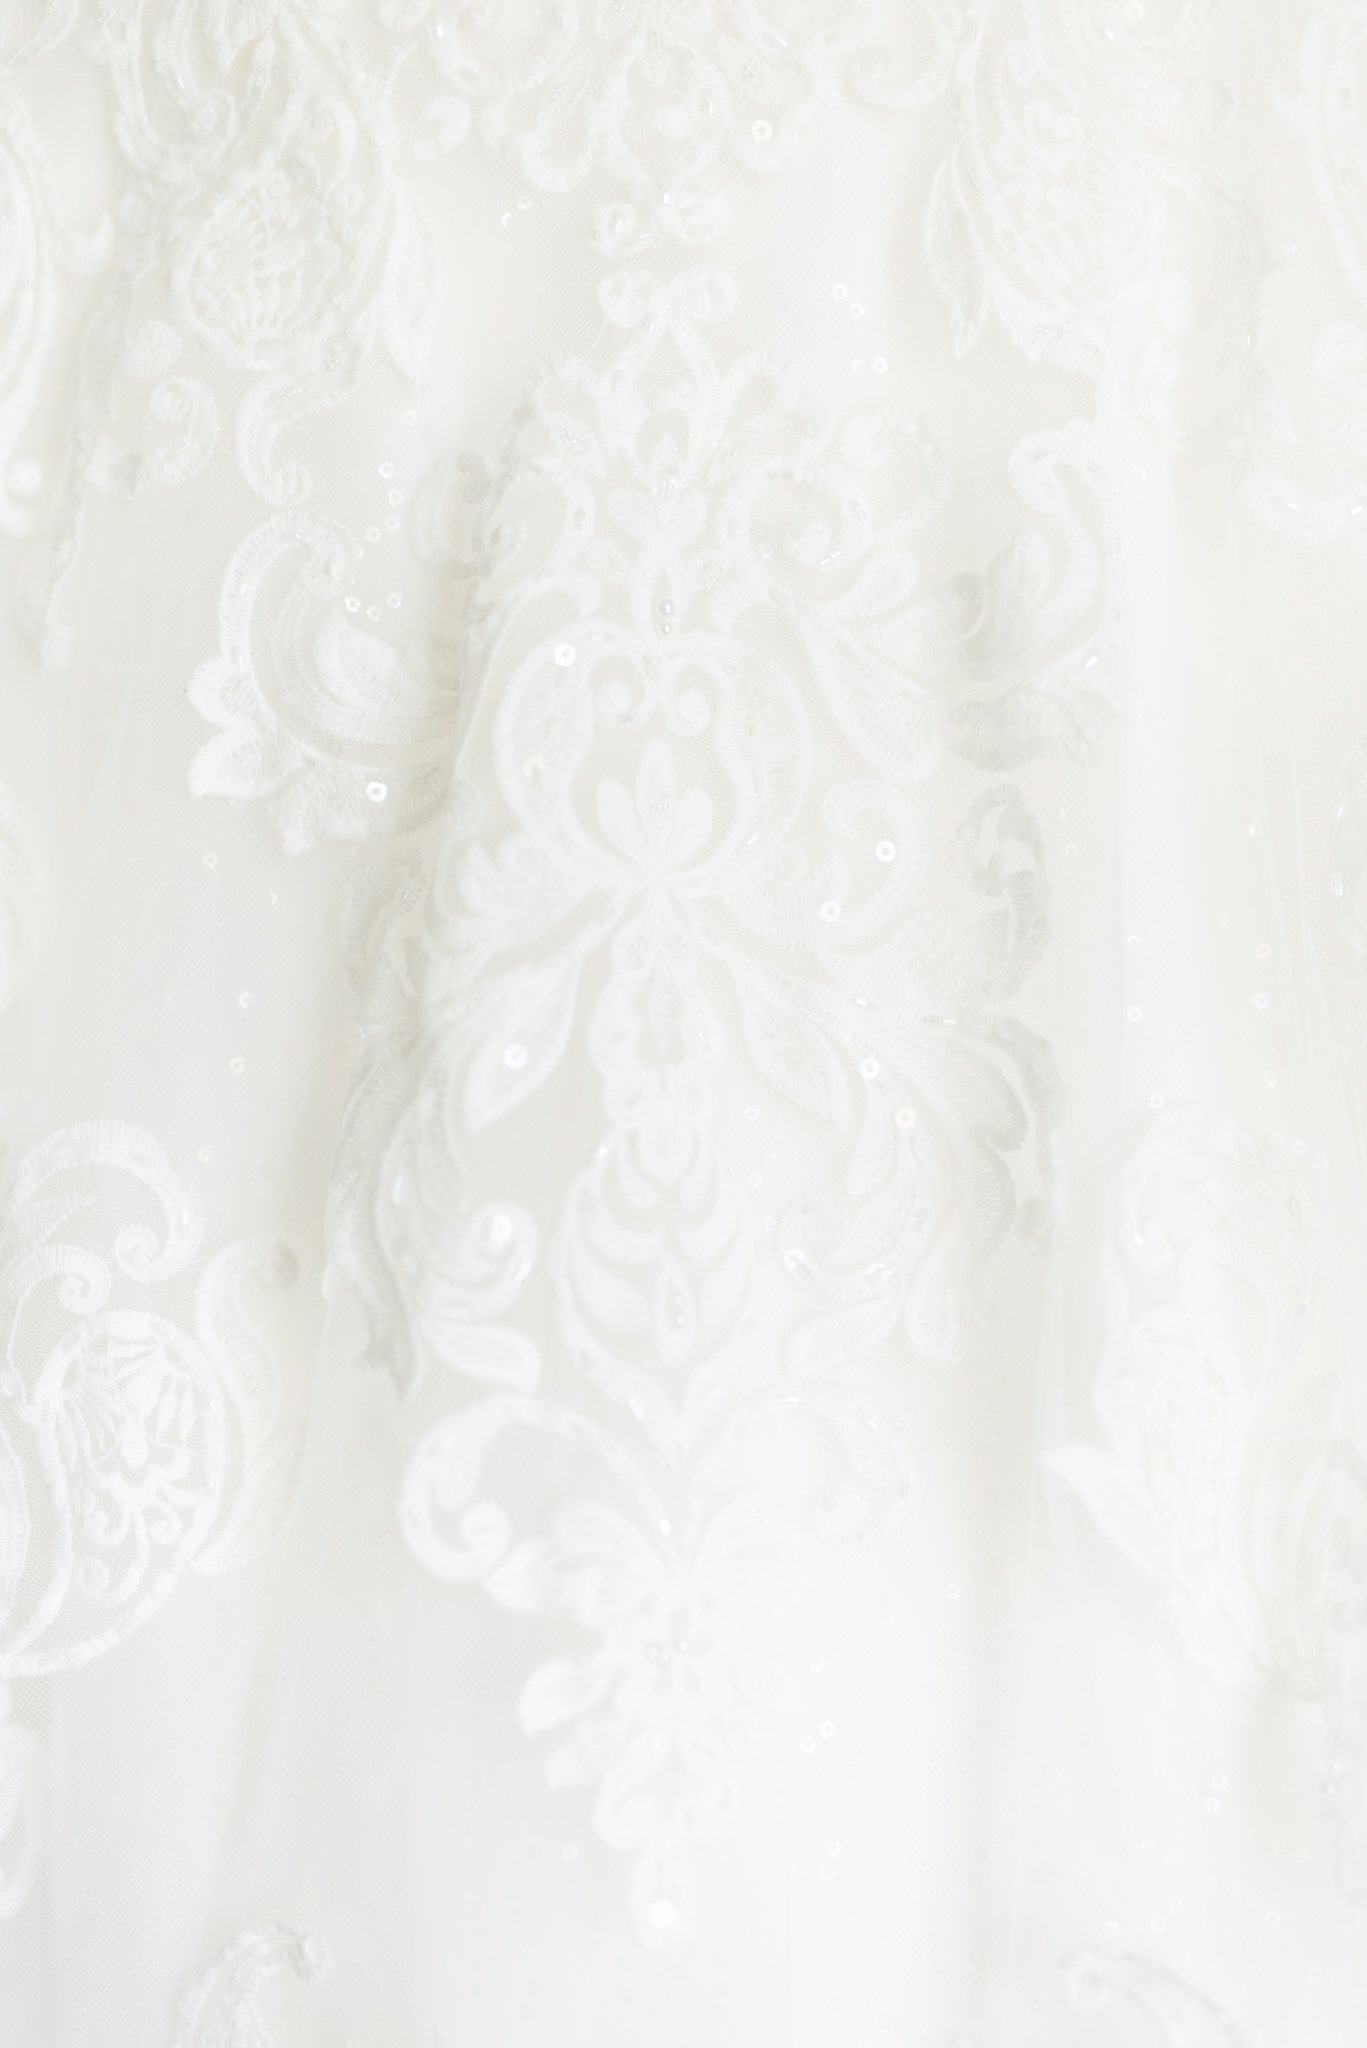 Lace pattern on wedding dress.